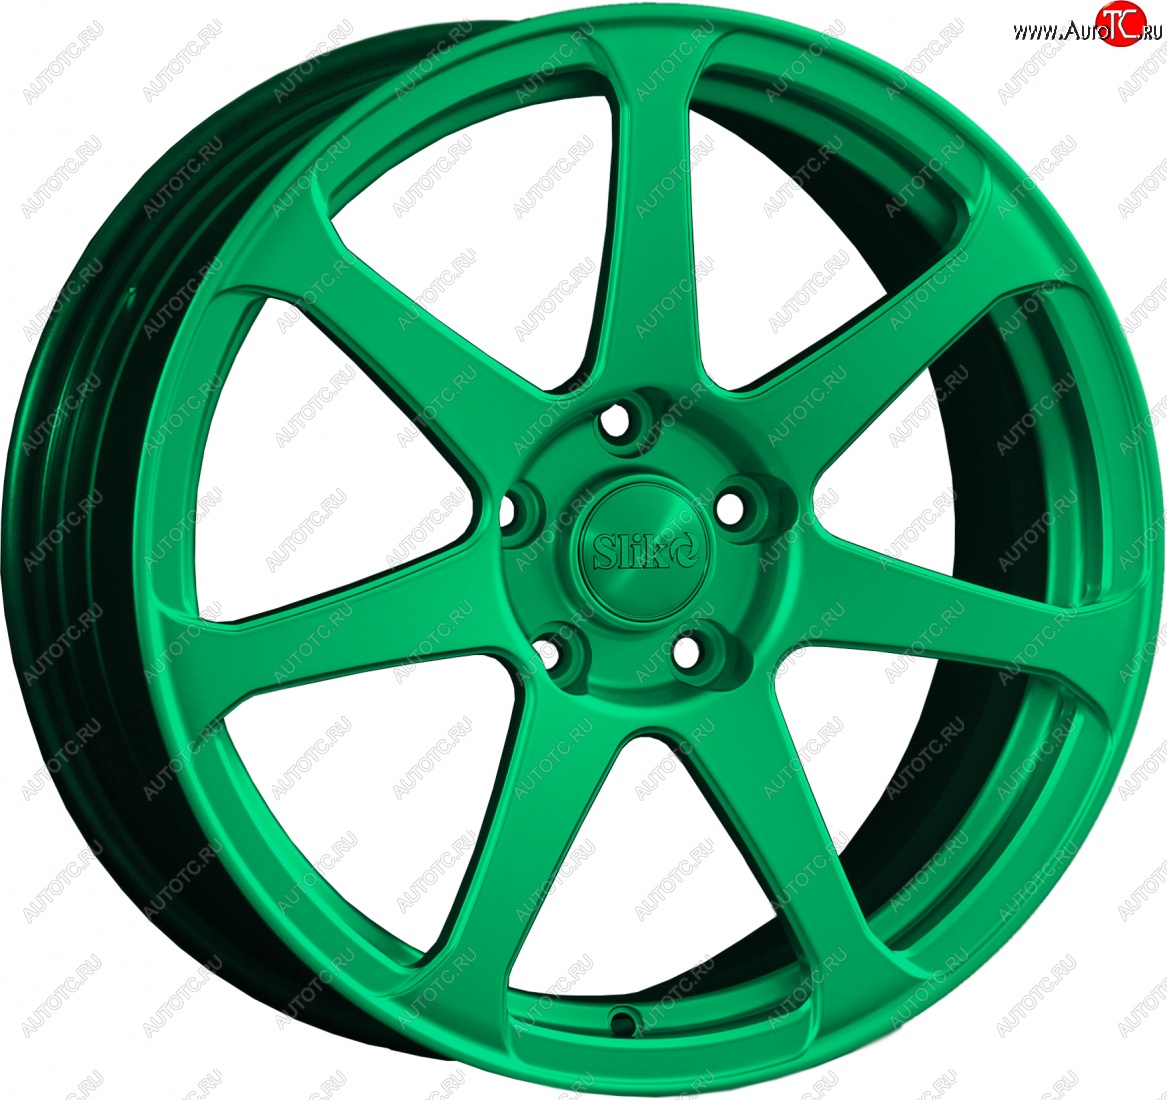 14 499 р. Кованый диск Slik classik R17x7.5 Candy Green изумрудно-зеленый 7.5x17 Toyota Allion T260 седан дорестайлинг (2007-2010) 5x100.0xDIA54.1xET45.0 (Цвет: Candy Green изумрудно-зеленый 7.5x17)